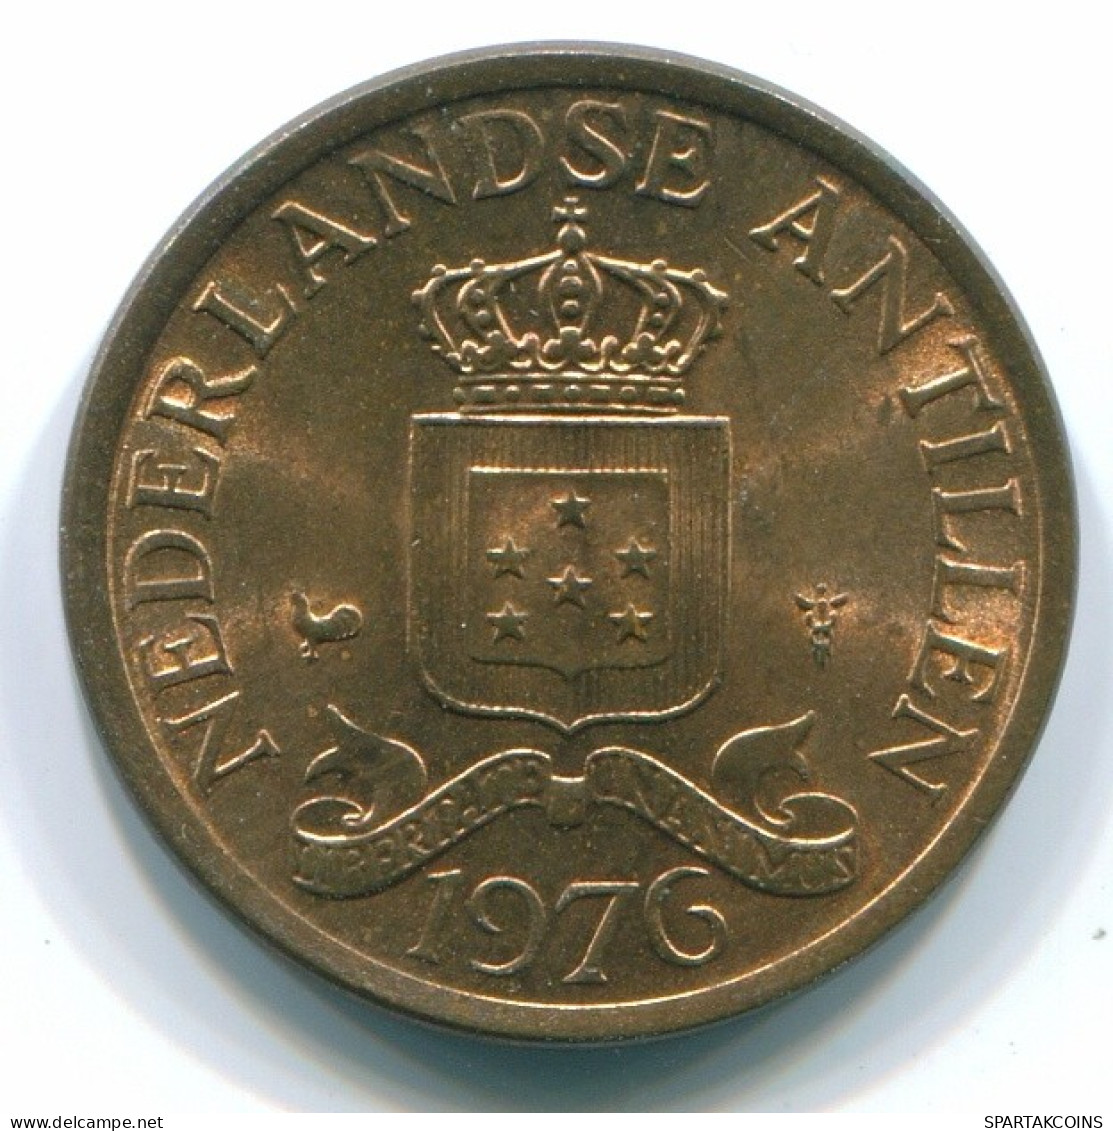 1 CENT 1976 NETHERLANDS ANTILLES Bronze Colonial Coin #S10701.U.A - Antilles Néerlandaises